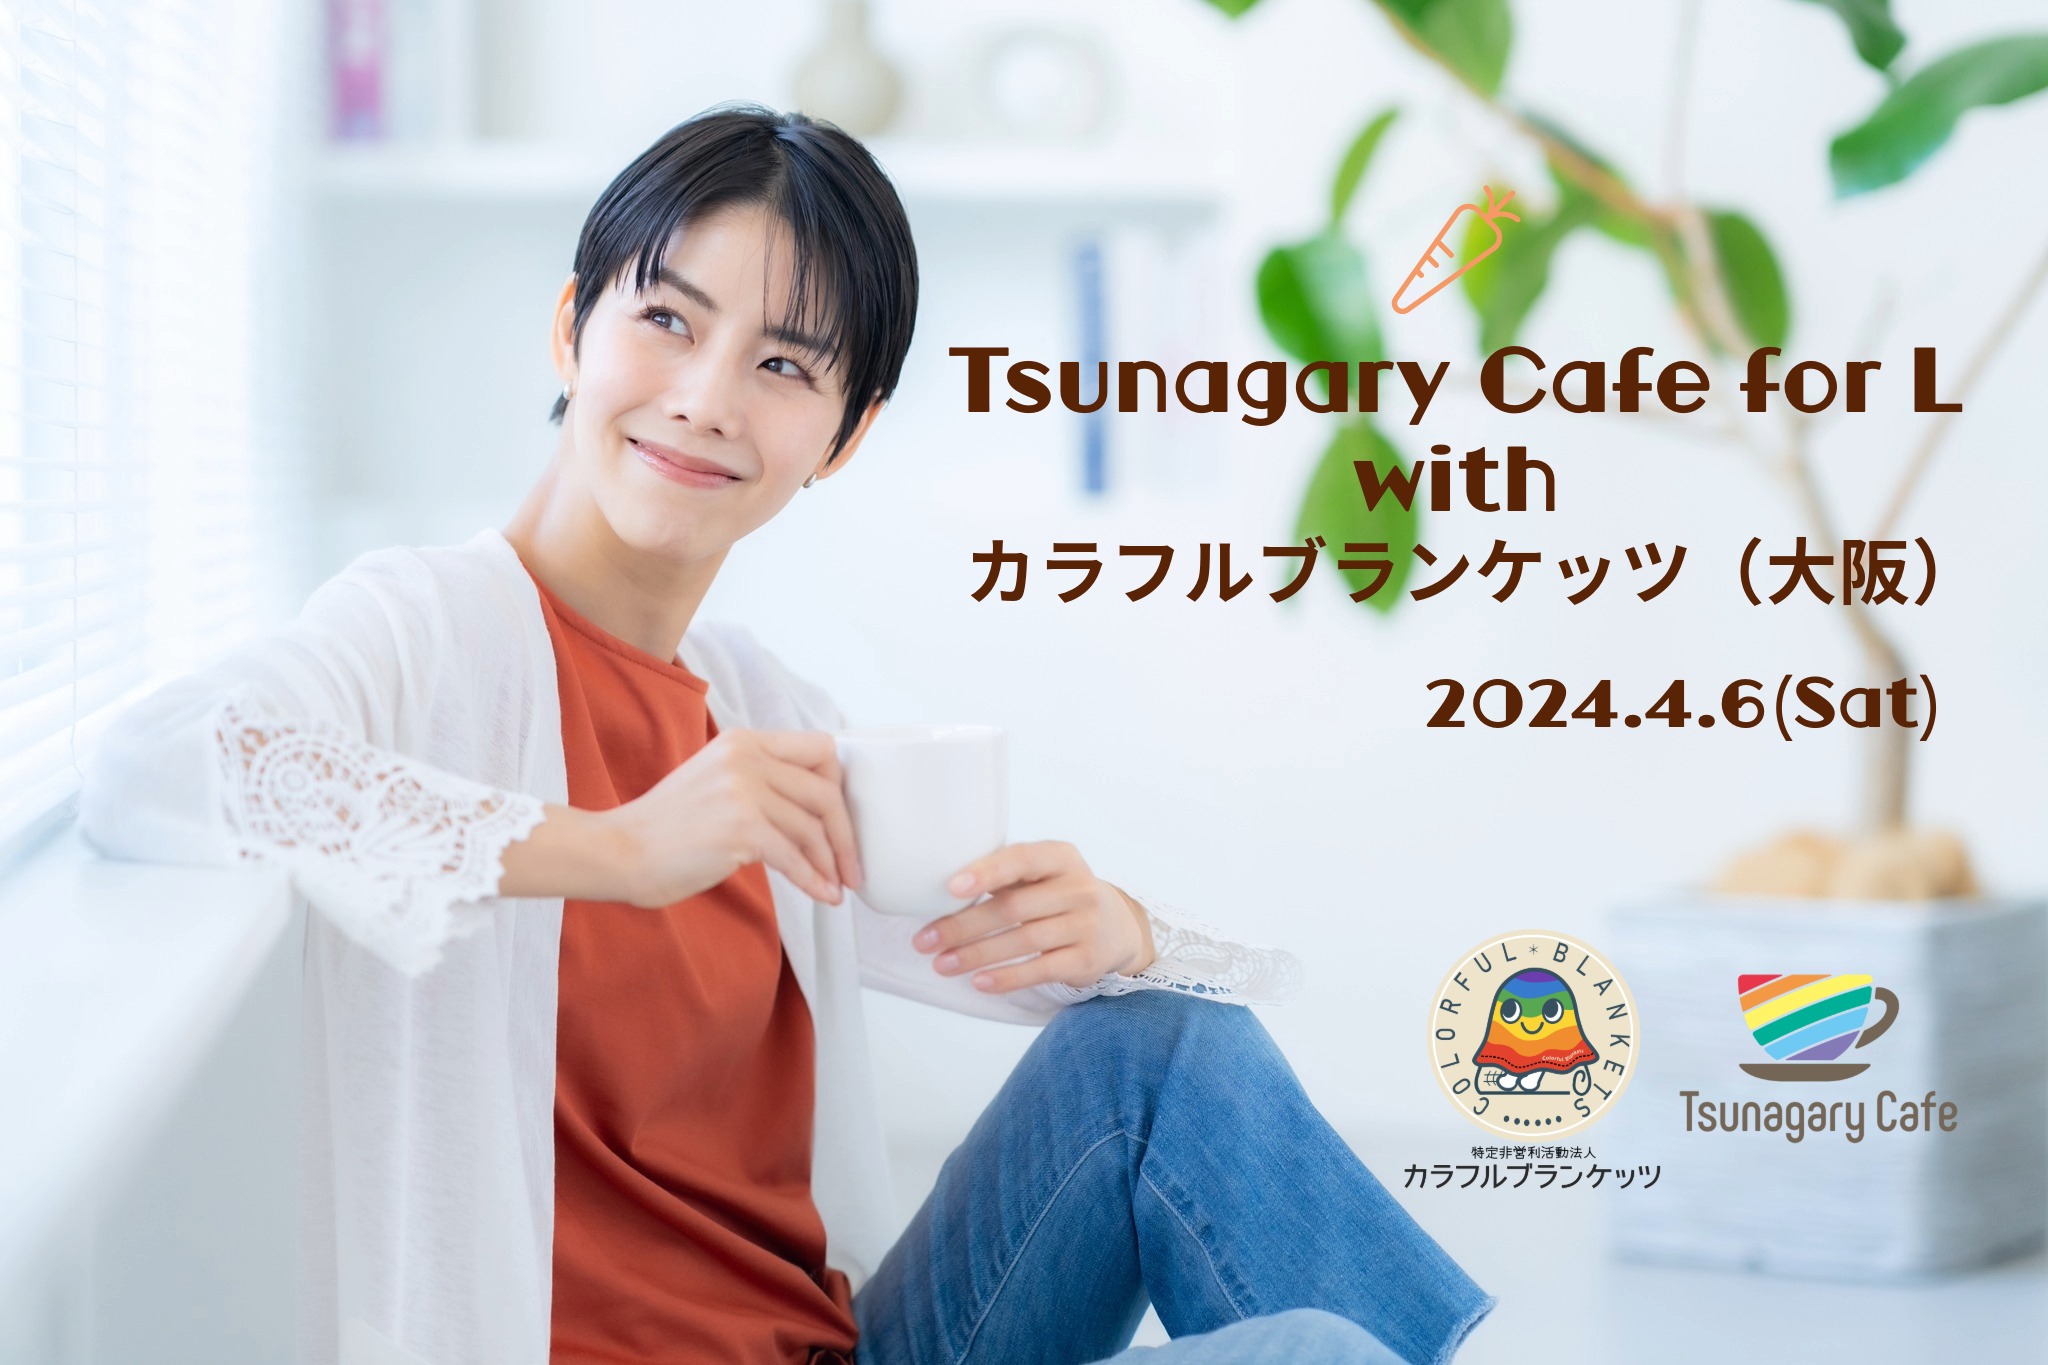 【大阪】Tsunagary Cafe for L